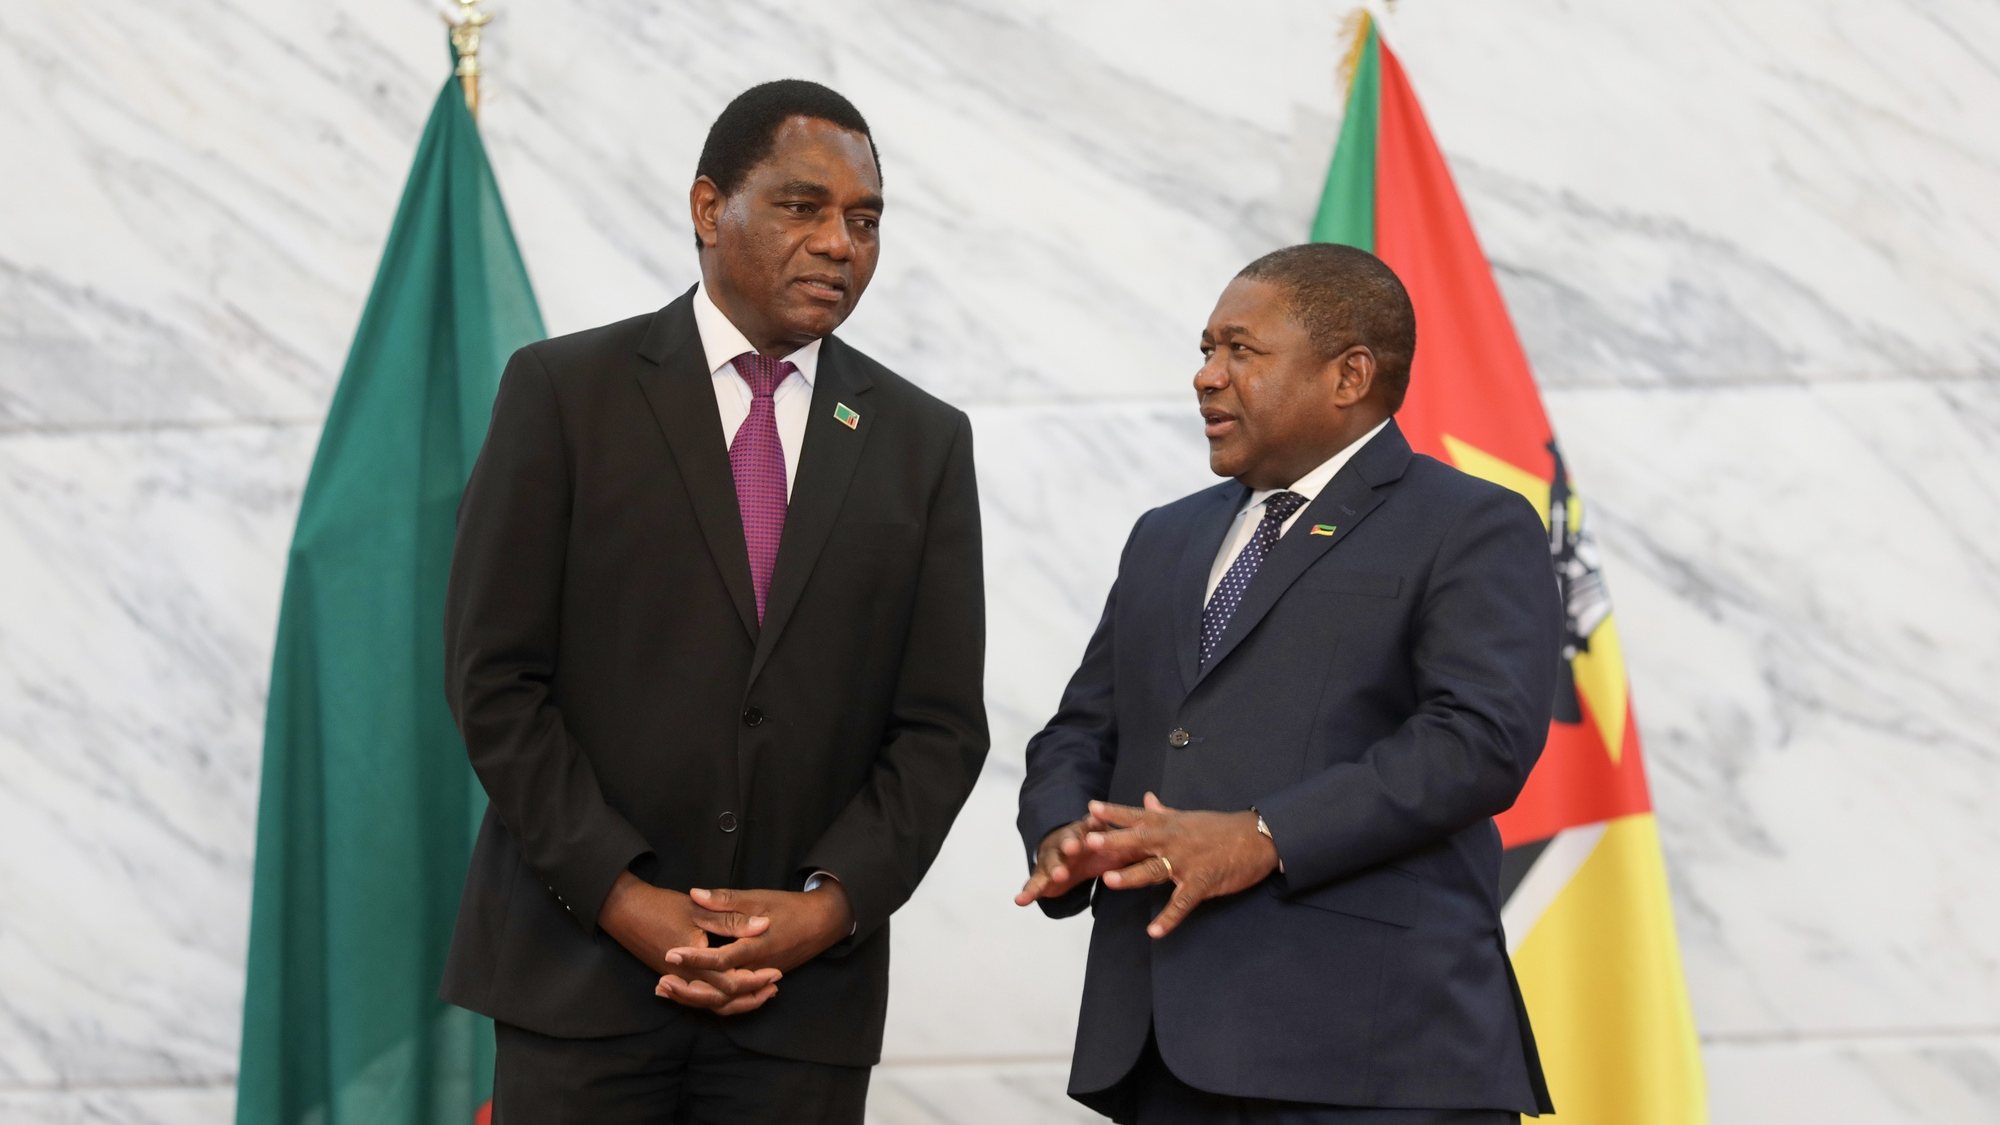 O Presidente da Zâmbia, Hakainde Hichilema (E), conversa com o Presidente de Moçambique, Filipe Nyusi (D), durante durante um encontro no Palácio Presidencial em Maputo, Moçambique, 04 de abril de 2023. O Presidente da Zâmbia, Hakainde Hichilema, está de visita de três dias a Moçambique para “aprofundar e consolidar” a cooperação e amizade entre os dois países. LUÍSA NHANTUMBO/LUSA